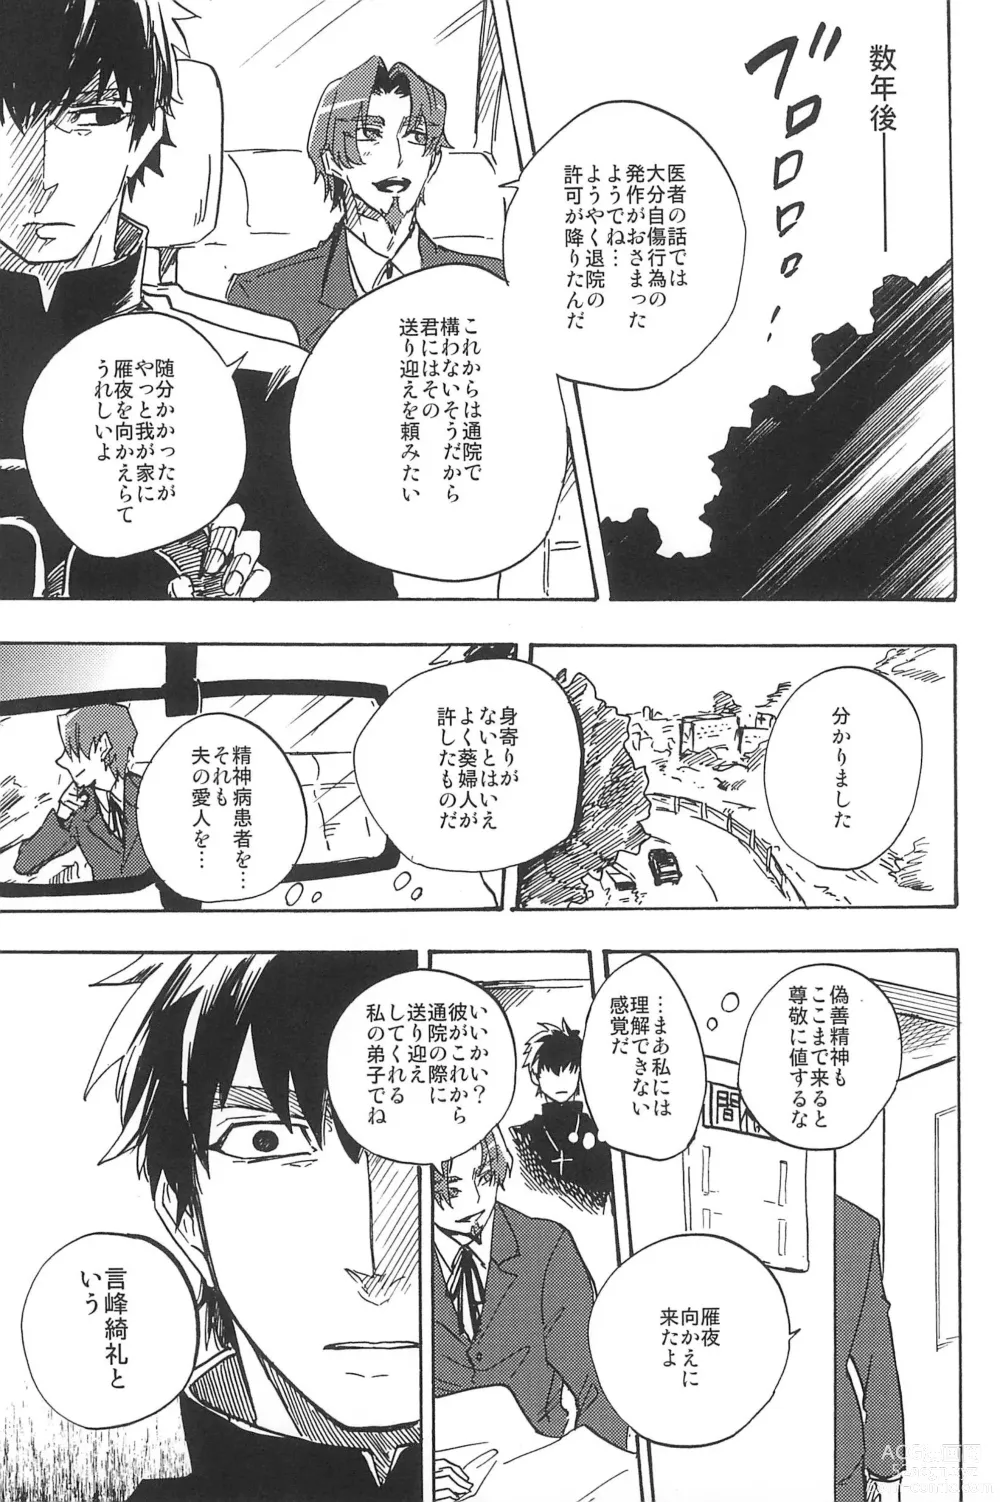 Page 321 of doujinshi RE:BERSERK